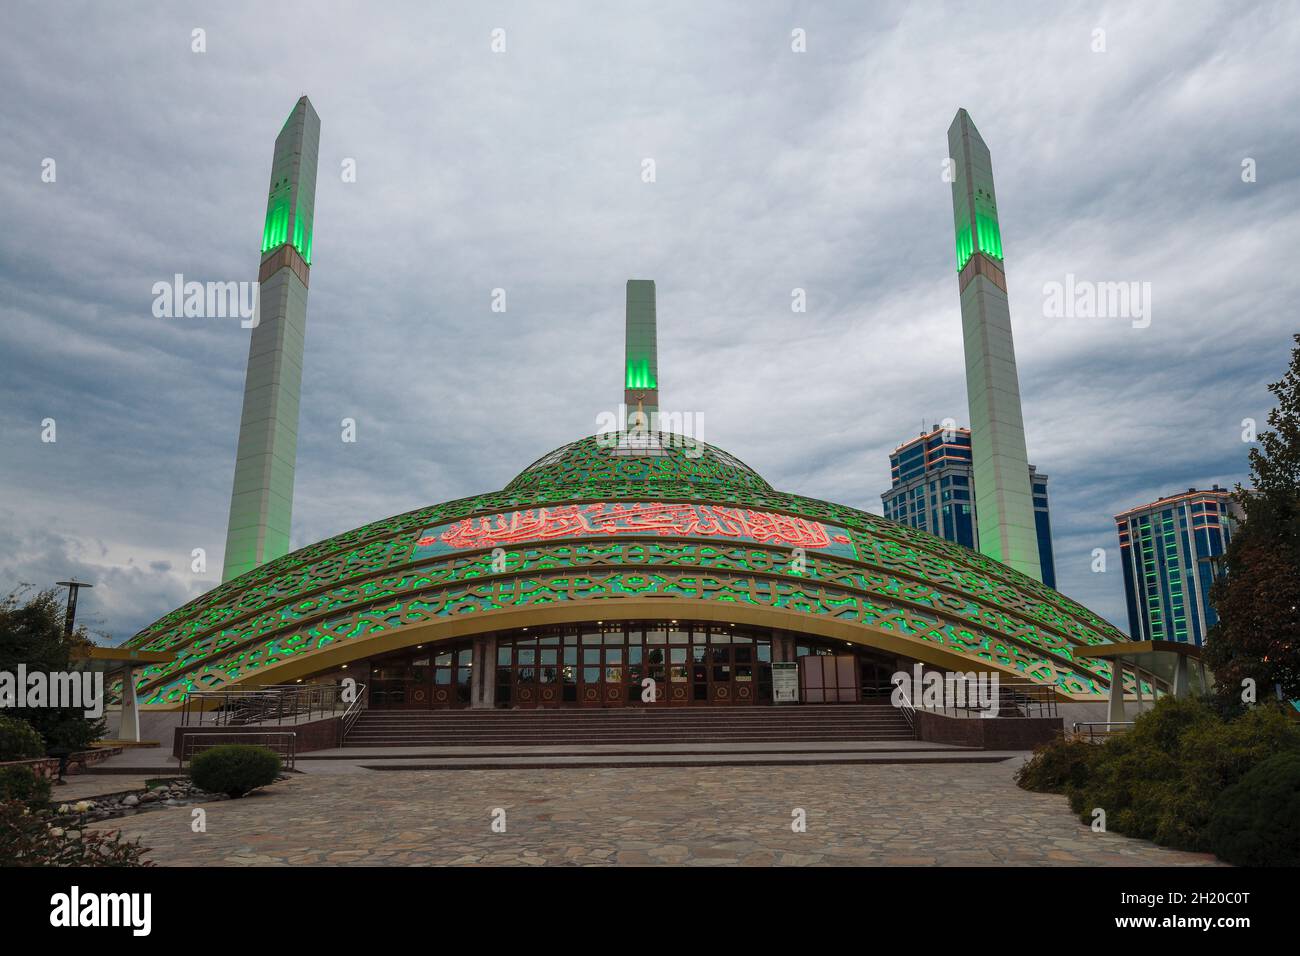 ARGUN, RUSSIA - SEPTEMBER 28, 2021: Mosque 'Mother's Heart' (Aymani Kadyrova) on a cloudy September evening Stock Photo